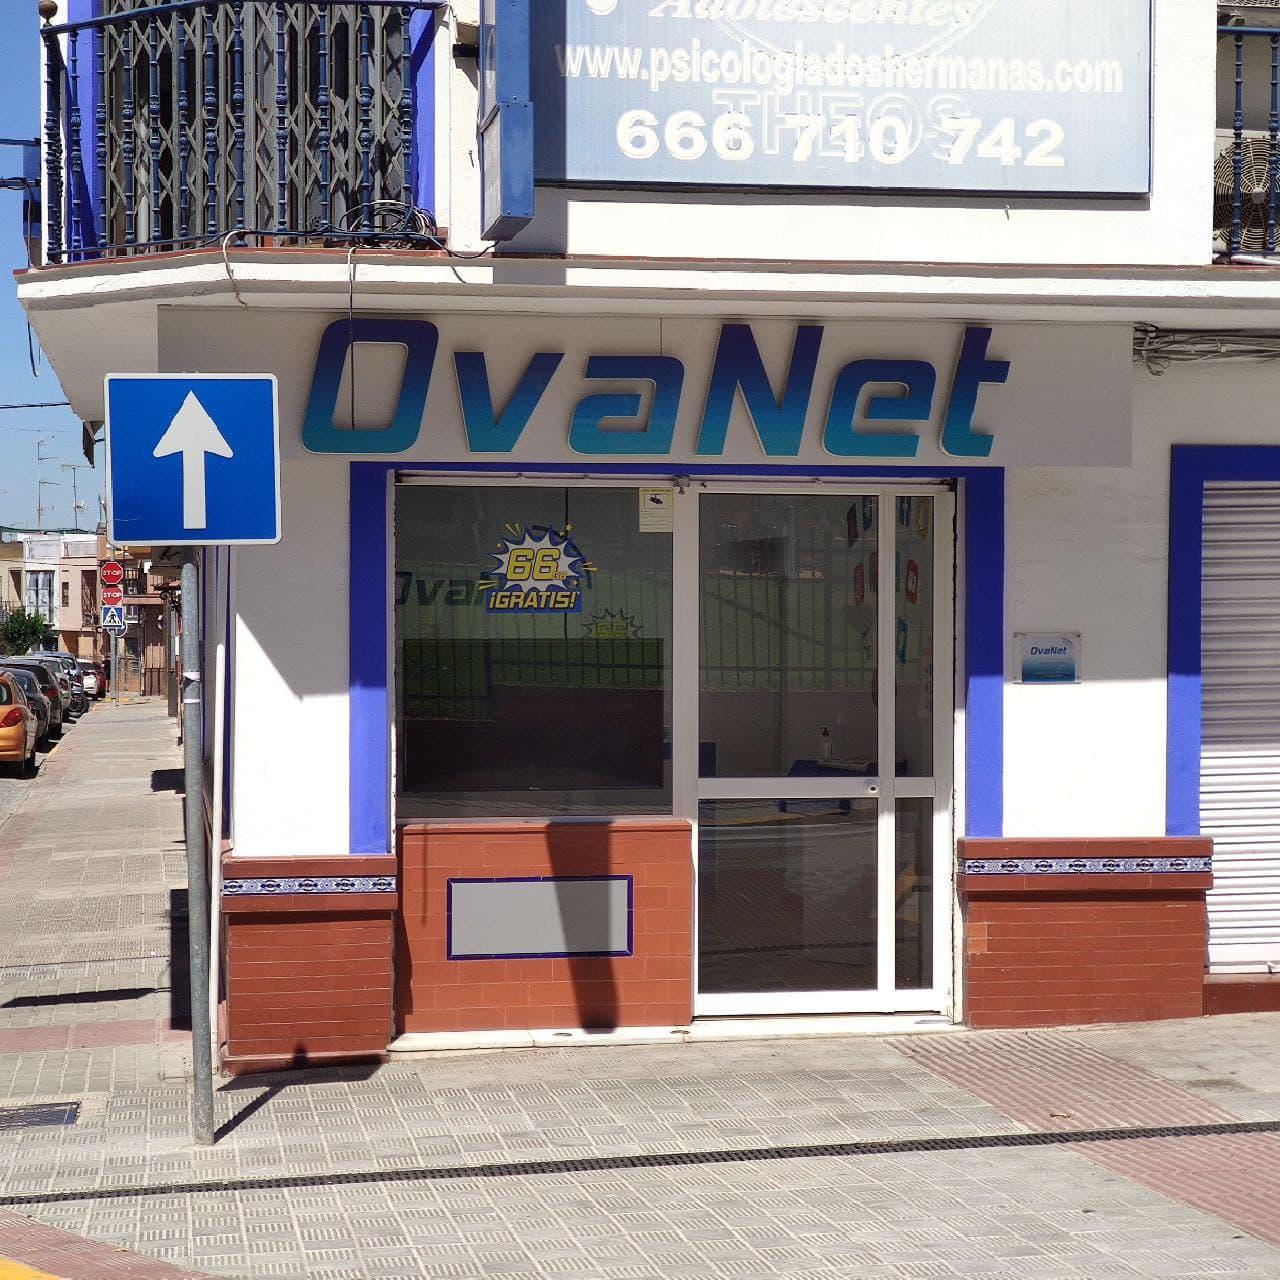 Images Ovanet, ADSL, Fibra, Móvil